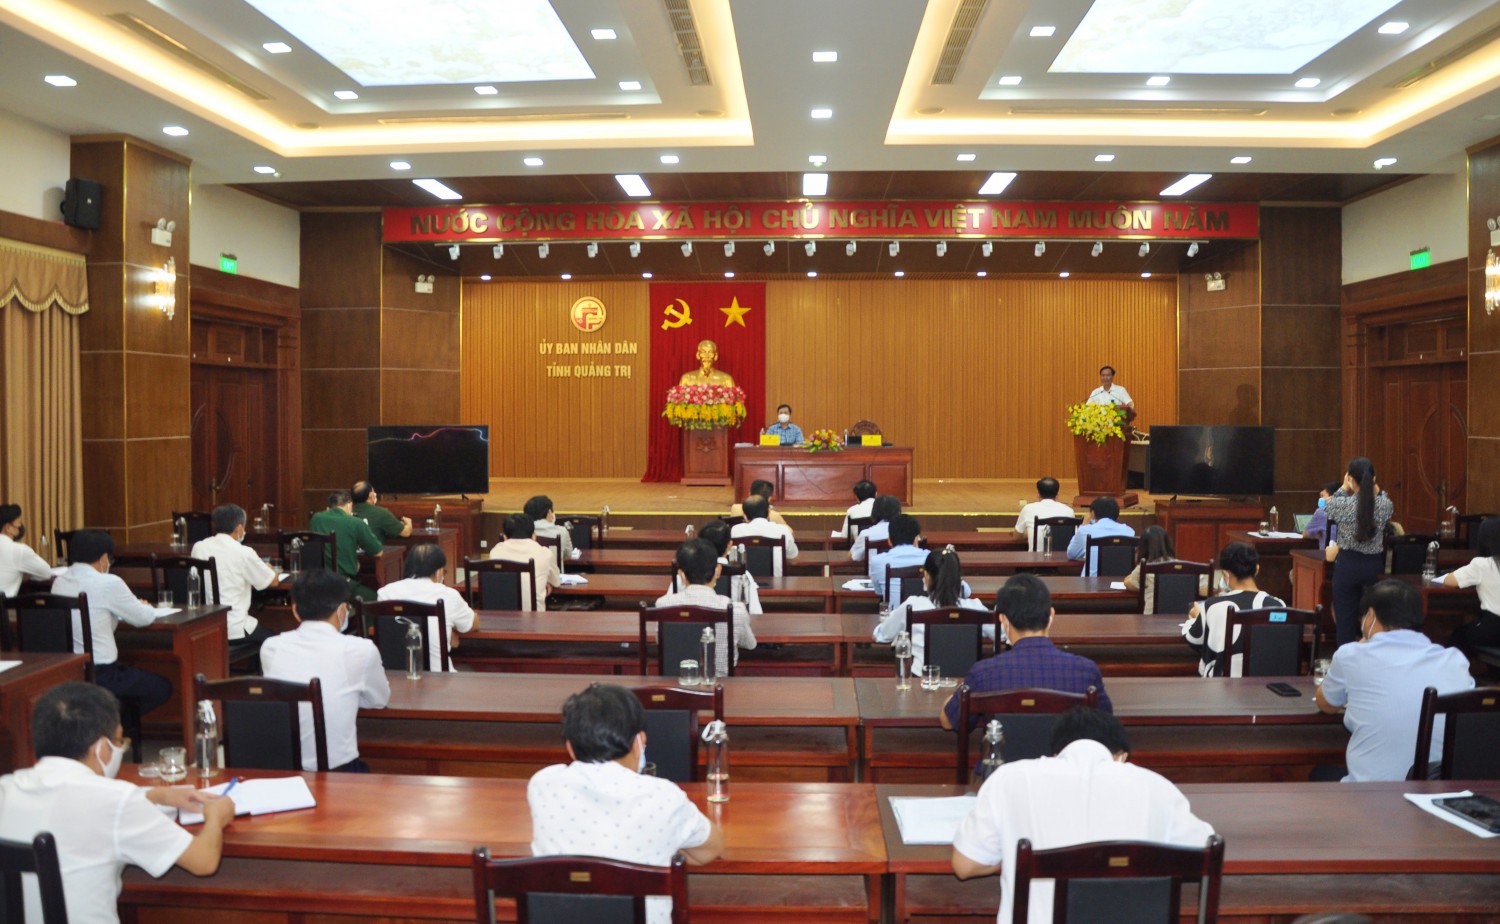 Chủ tịch UBND tỉnh Võ Văn Hưng nhấn mạnh việc cần phải làm ngay trong thời điểm này là ban hành một chỉ thị mới để phù hợp với tình hình - Ảnh: Q.H